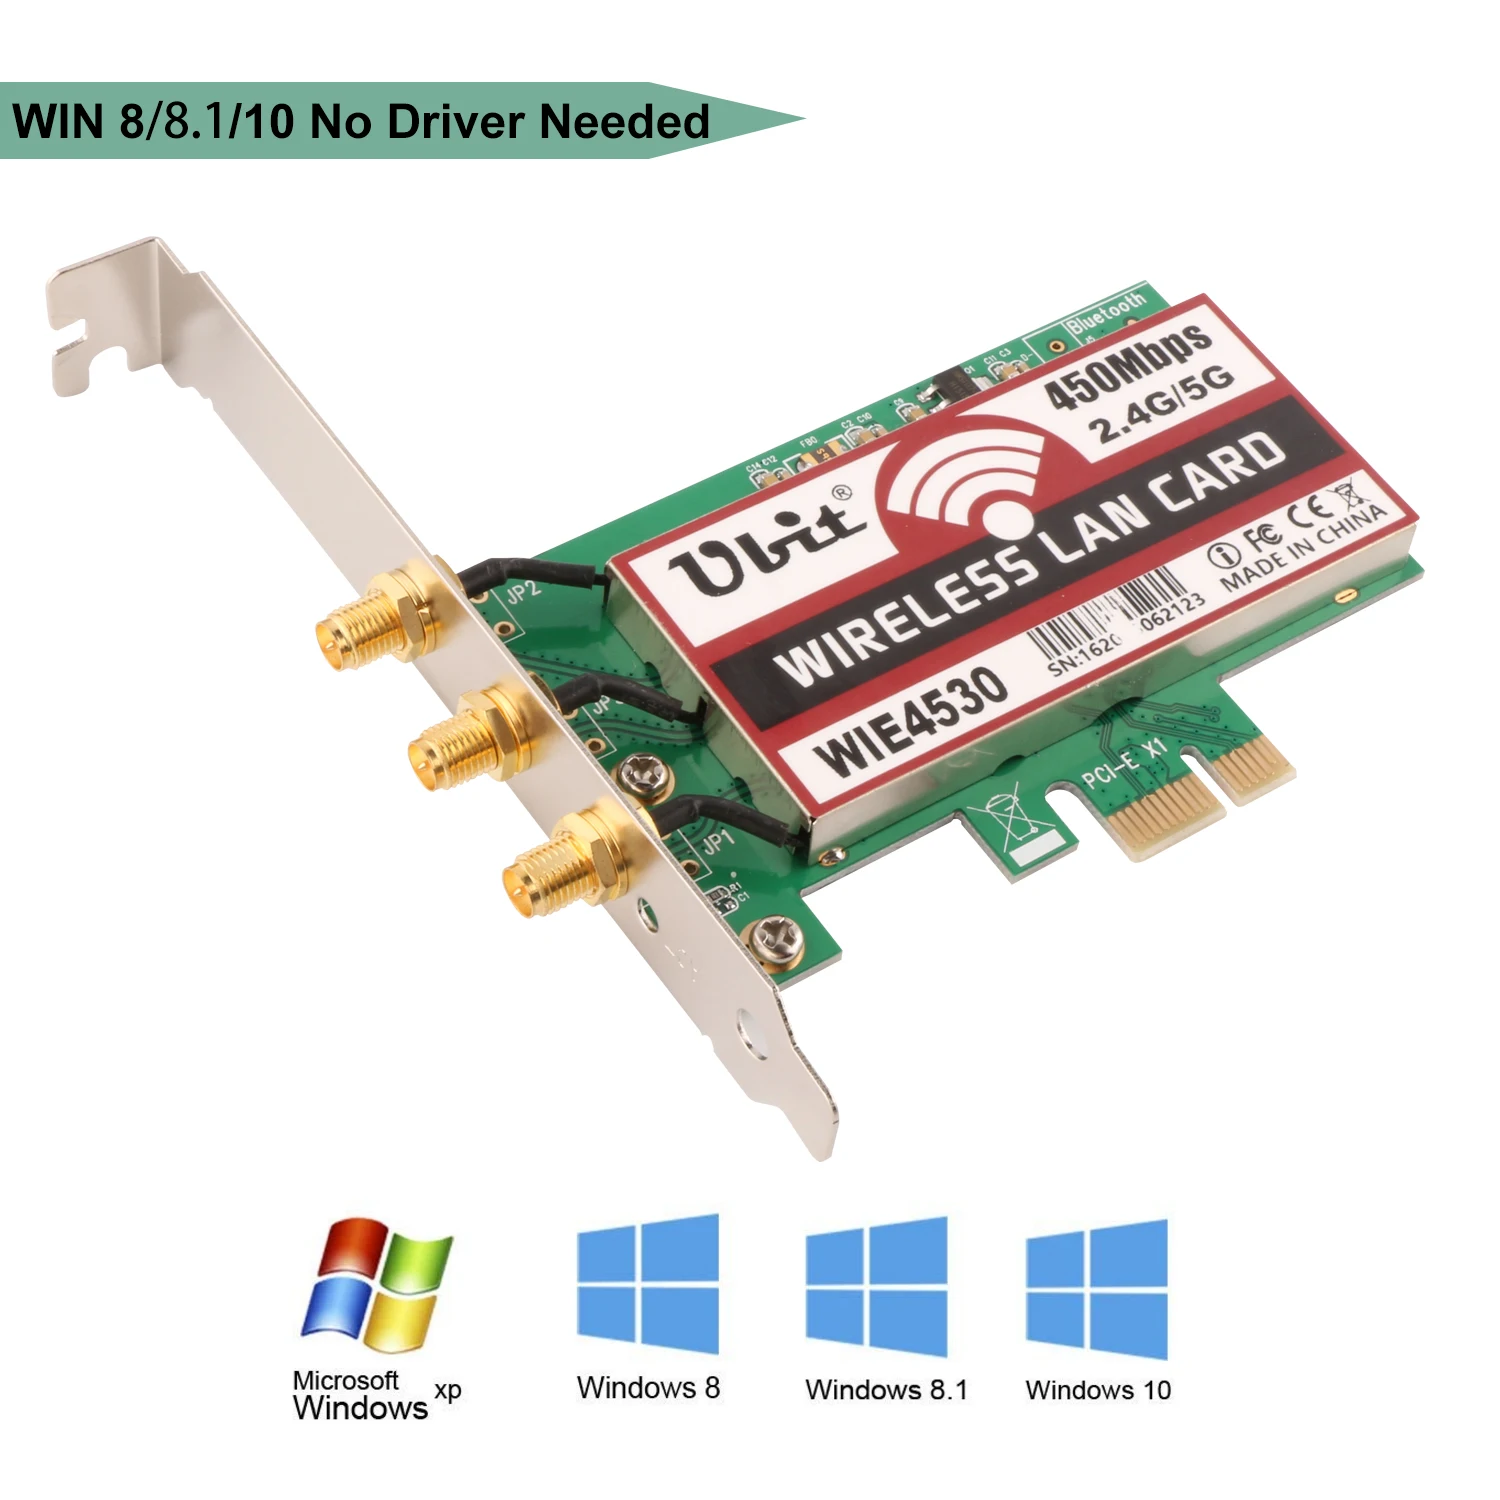 Ubit беспроводной PCI-E экспресс-карта WiFi сетевая карта Поддержка двухдиапазонный (2,4 ГГц 450 Мбит/с или 5 ГГц 450 Мбит/с) с 3 шт. антенна